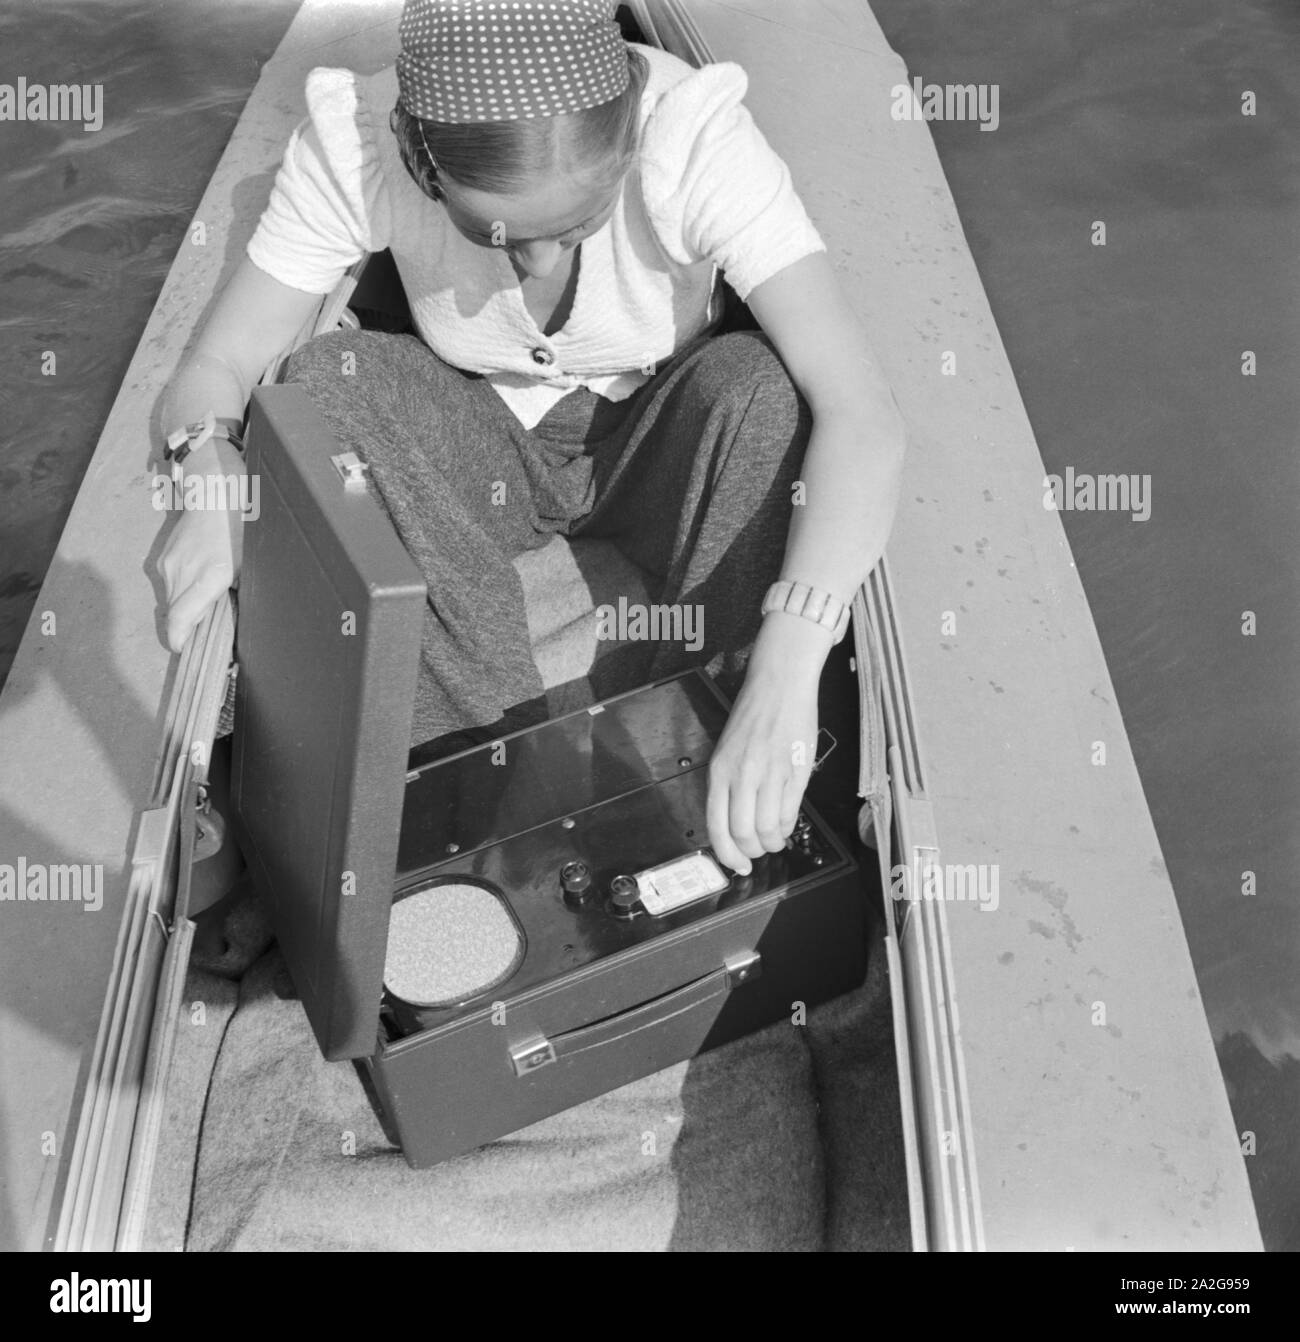 Ein Ausflug mit dem Klepper-Boot, 1930er Jahre Deutsches Reich. Une excursion avec un foldboat, Allemagne 1930. Banque D'Images